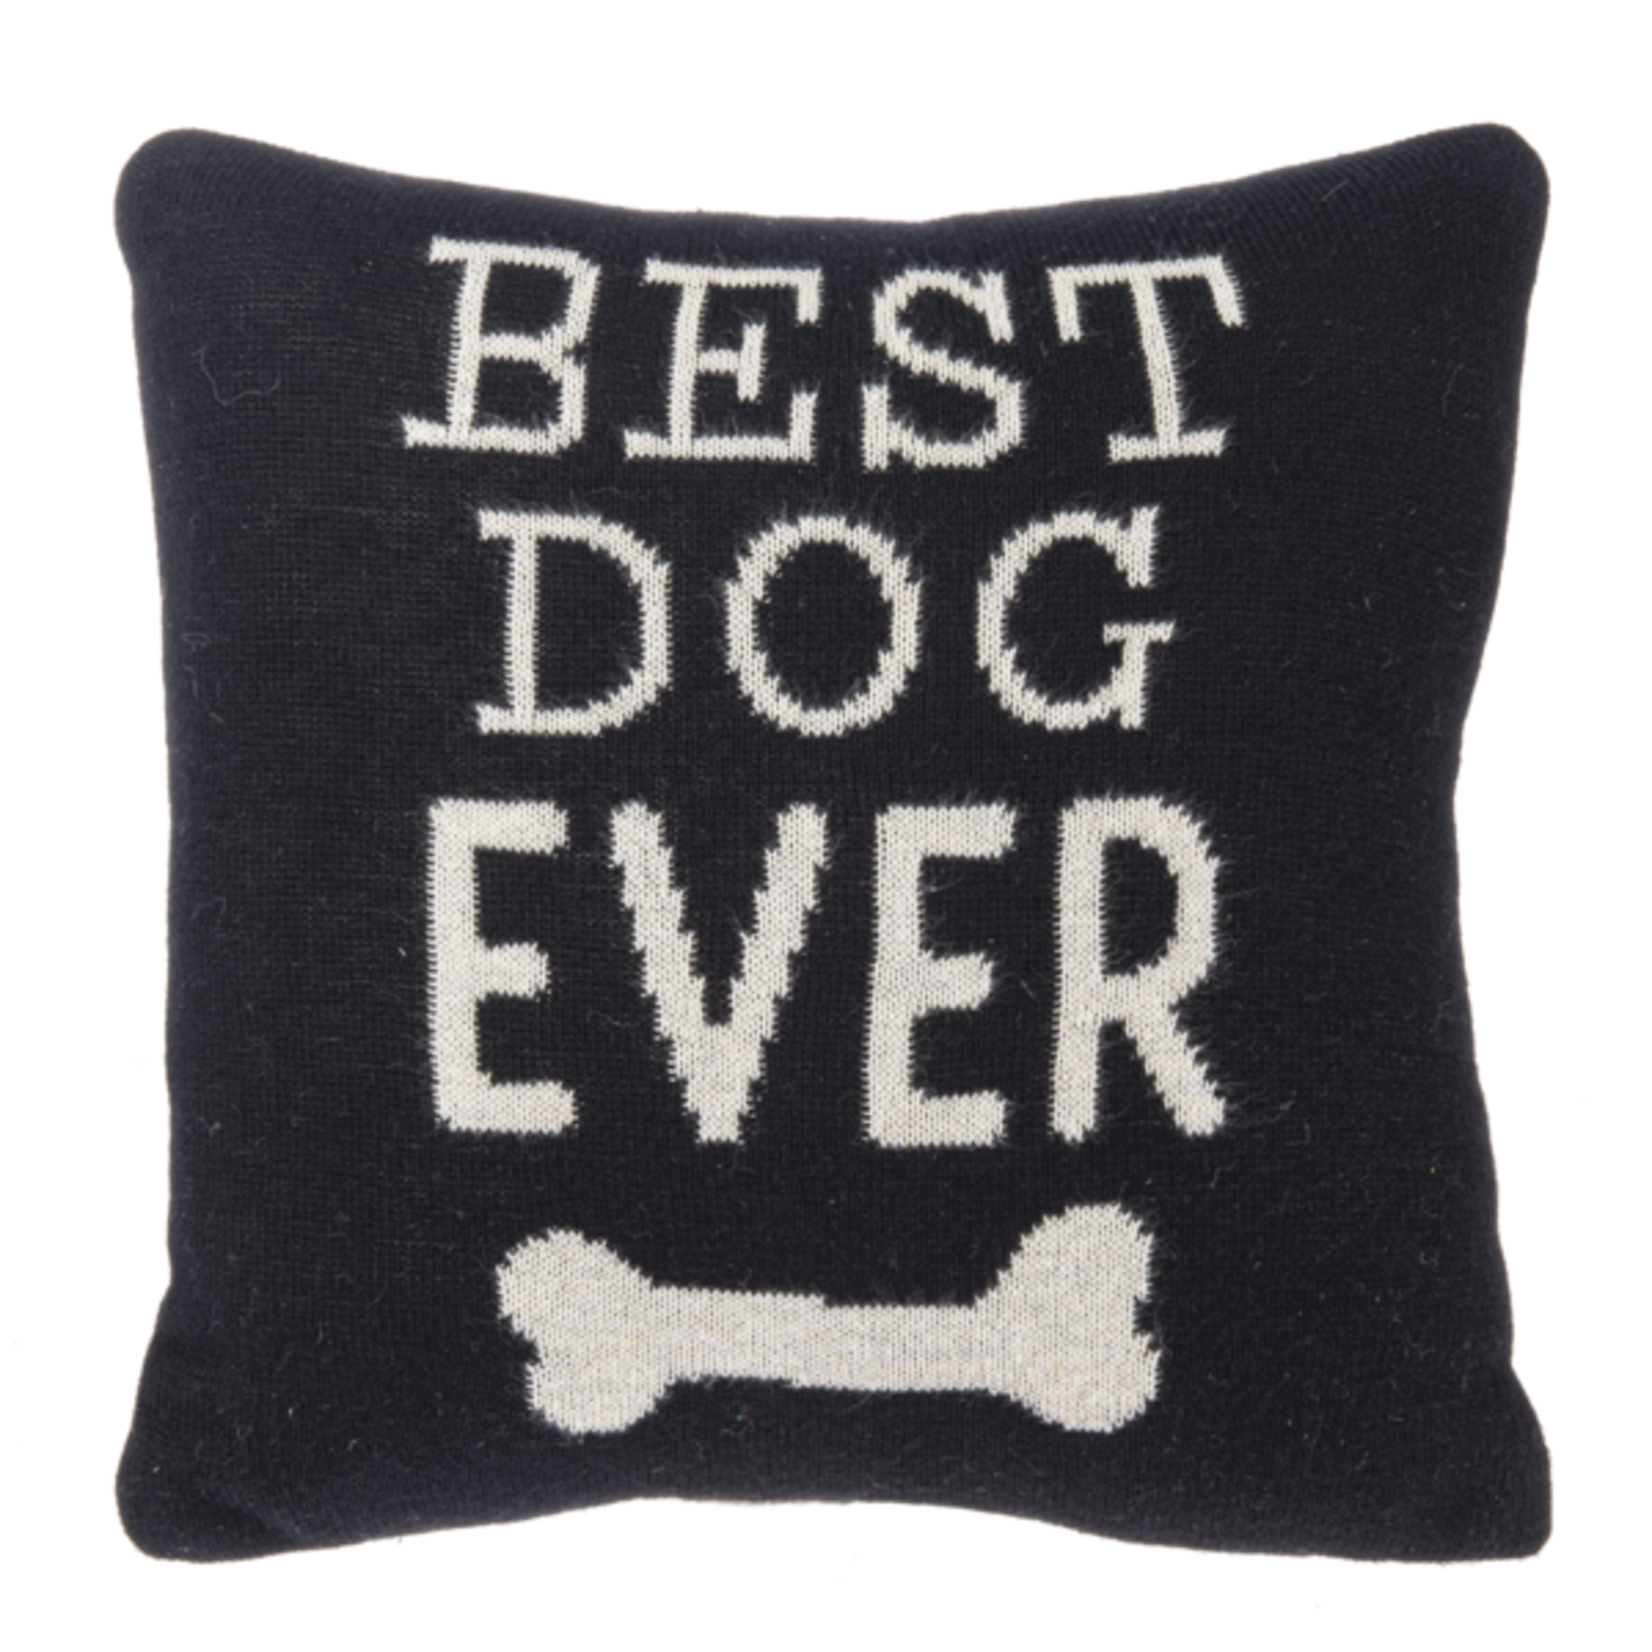 CBK Ganz Best Dog Ever Pillow - 10x10